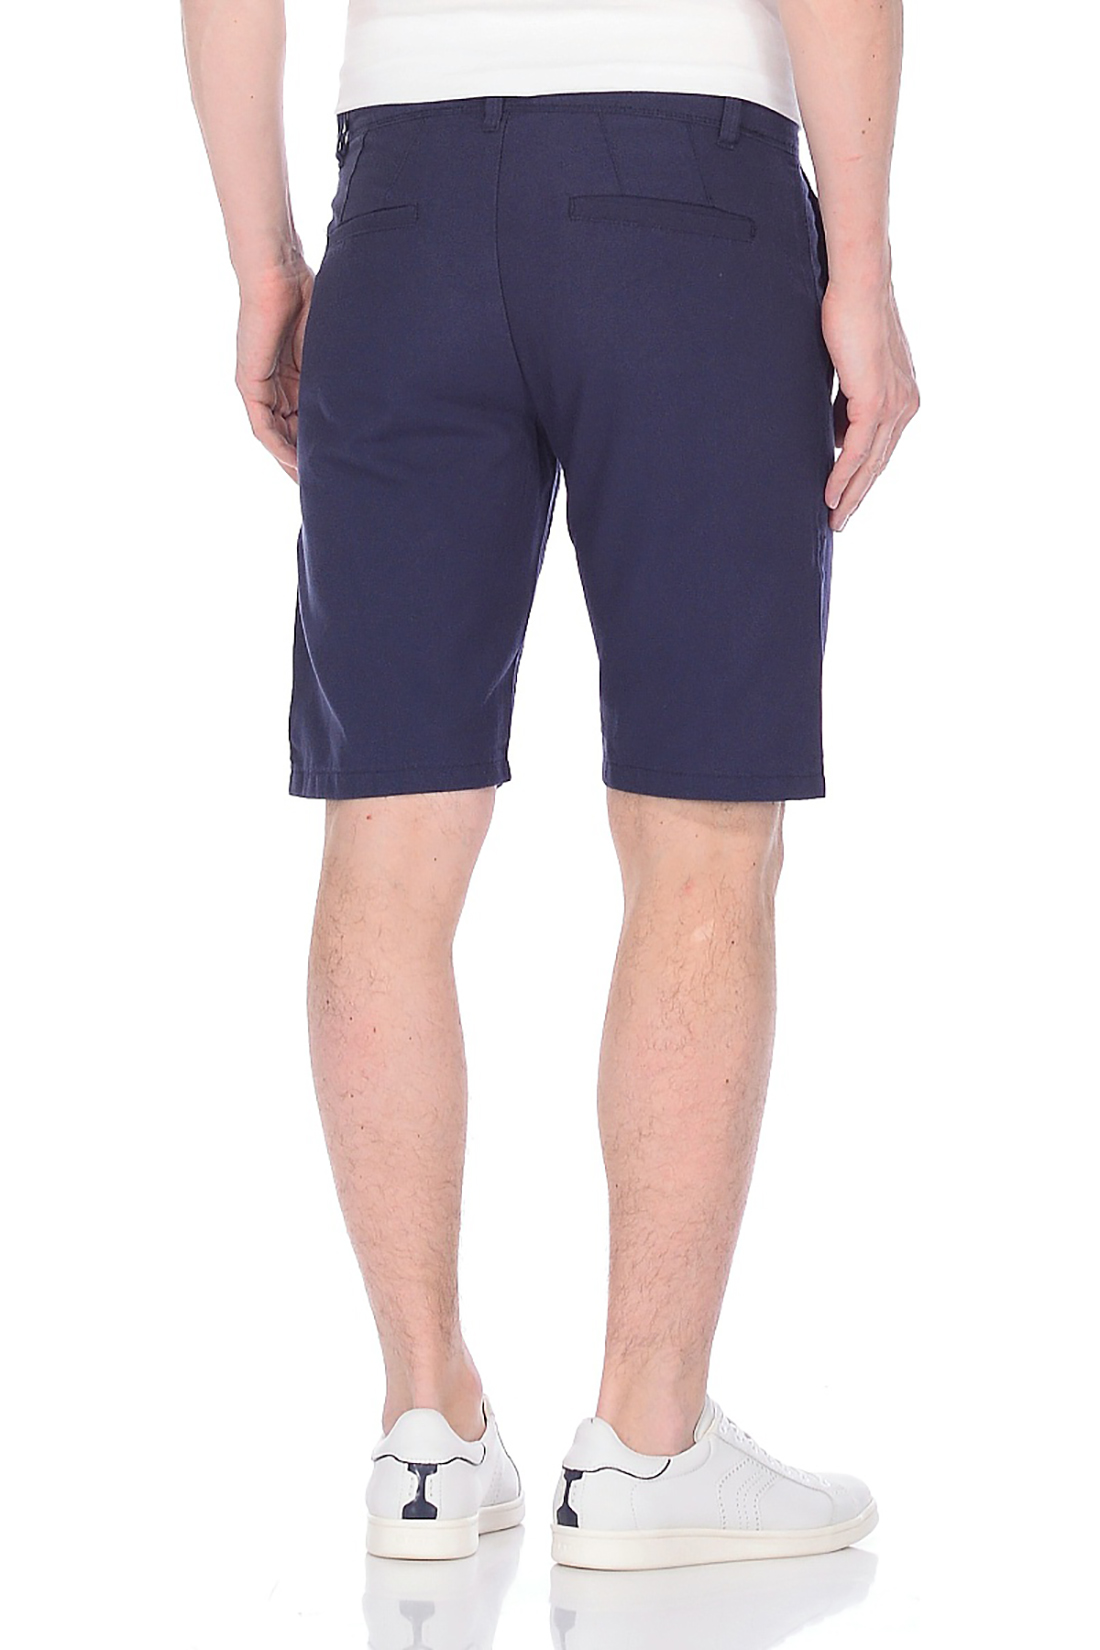 Хлопковые шорты с вытачками (арт. baon B828029), размер XXL, цвет синий Хлопковые шорты с вытачками (арт. baon B828029) - фото 2